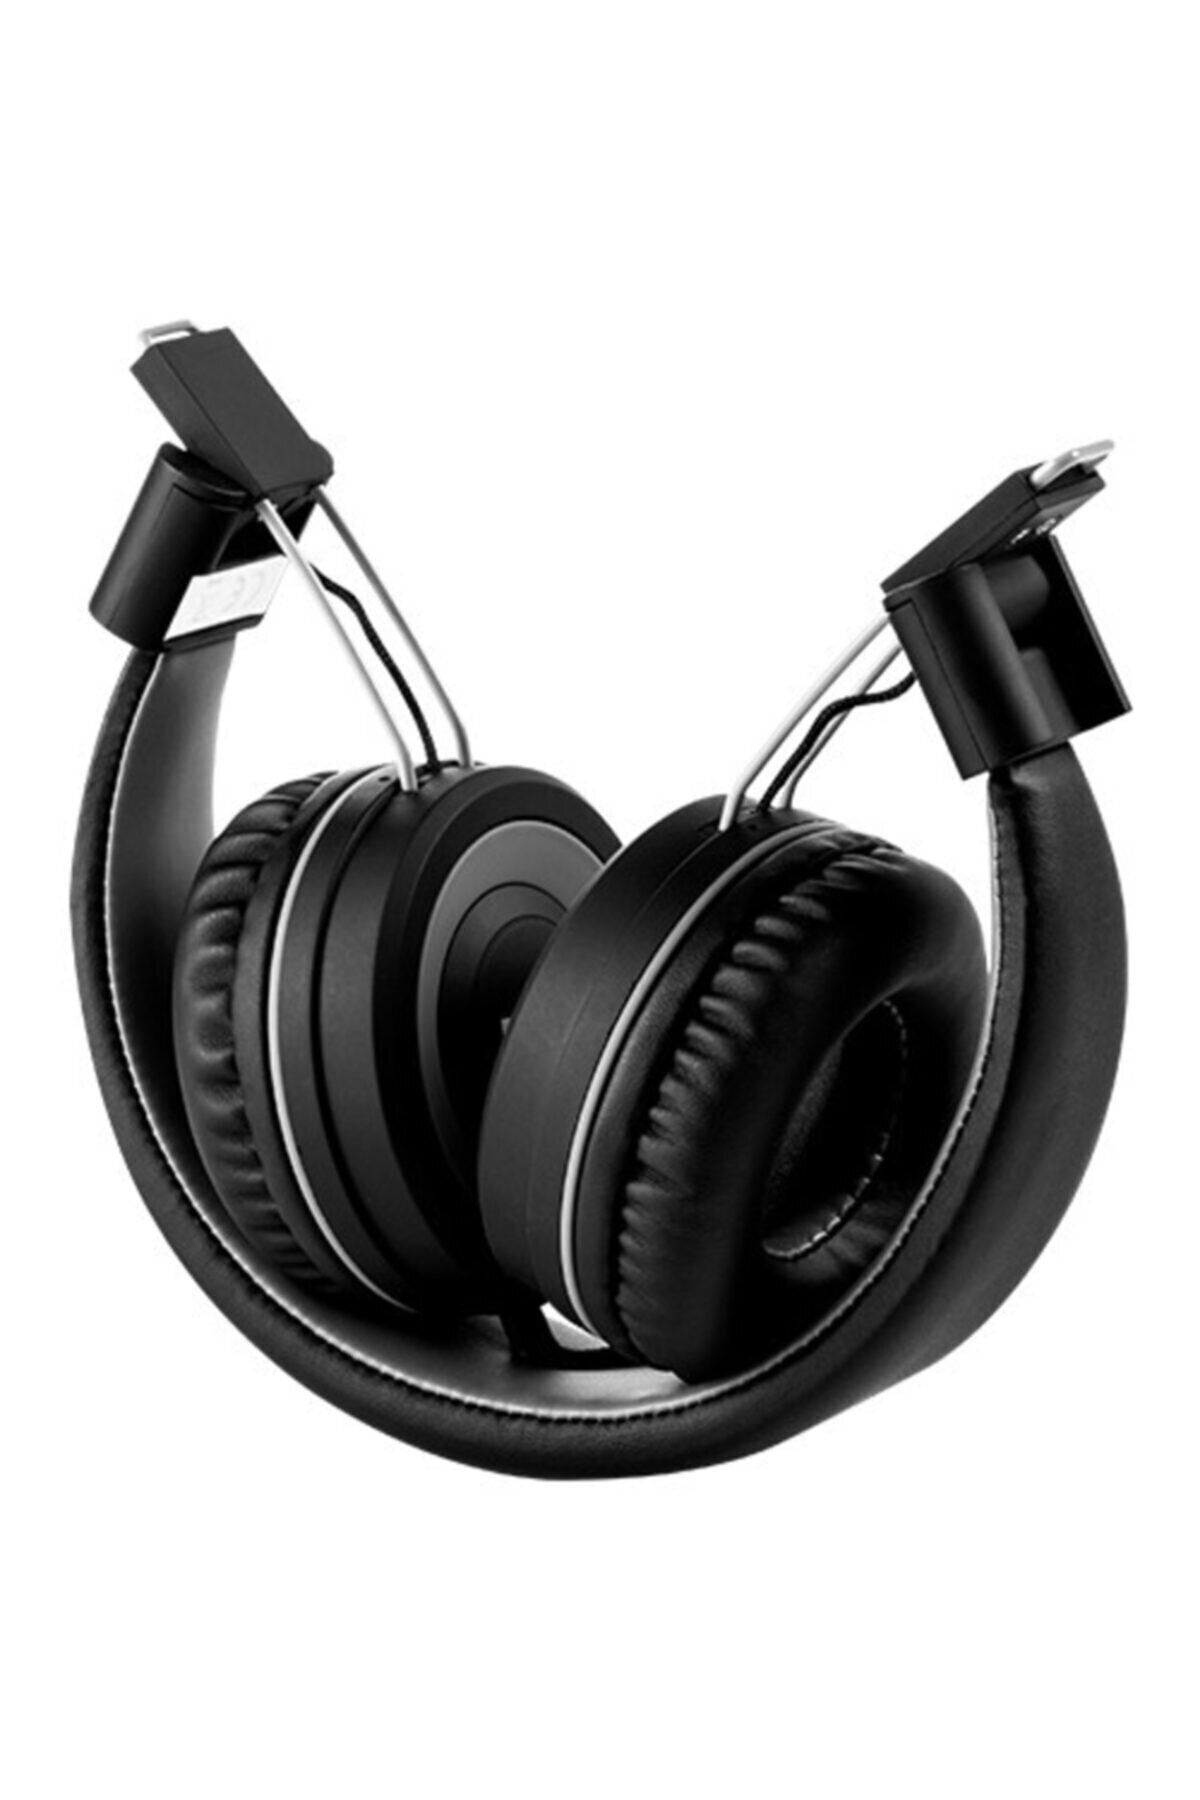 Polosmart FS28 Kablosuz Kulaklık - Siyah